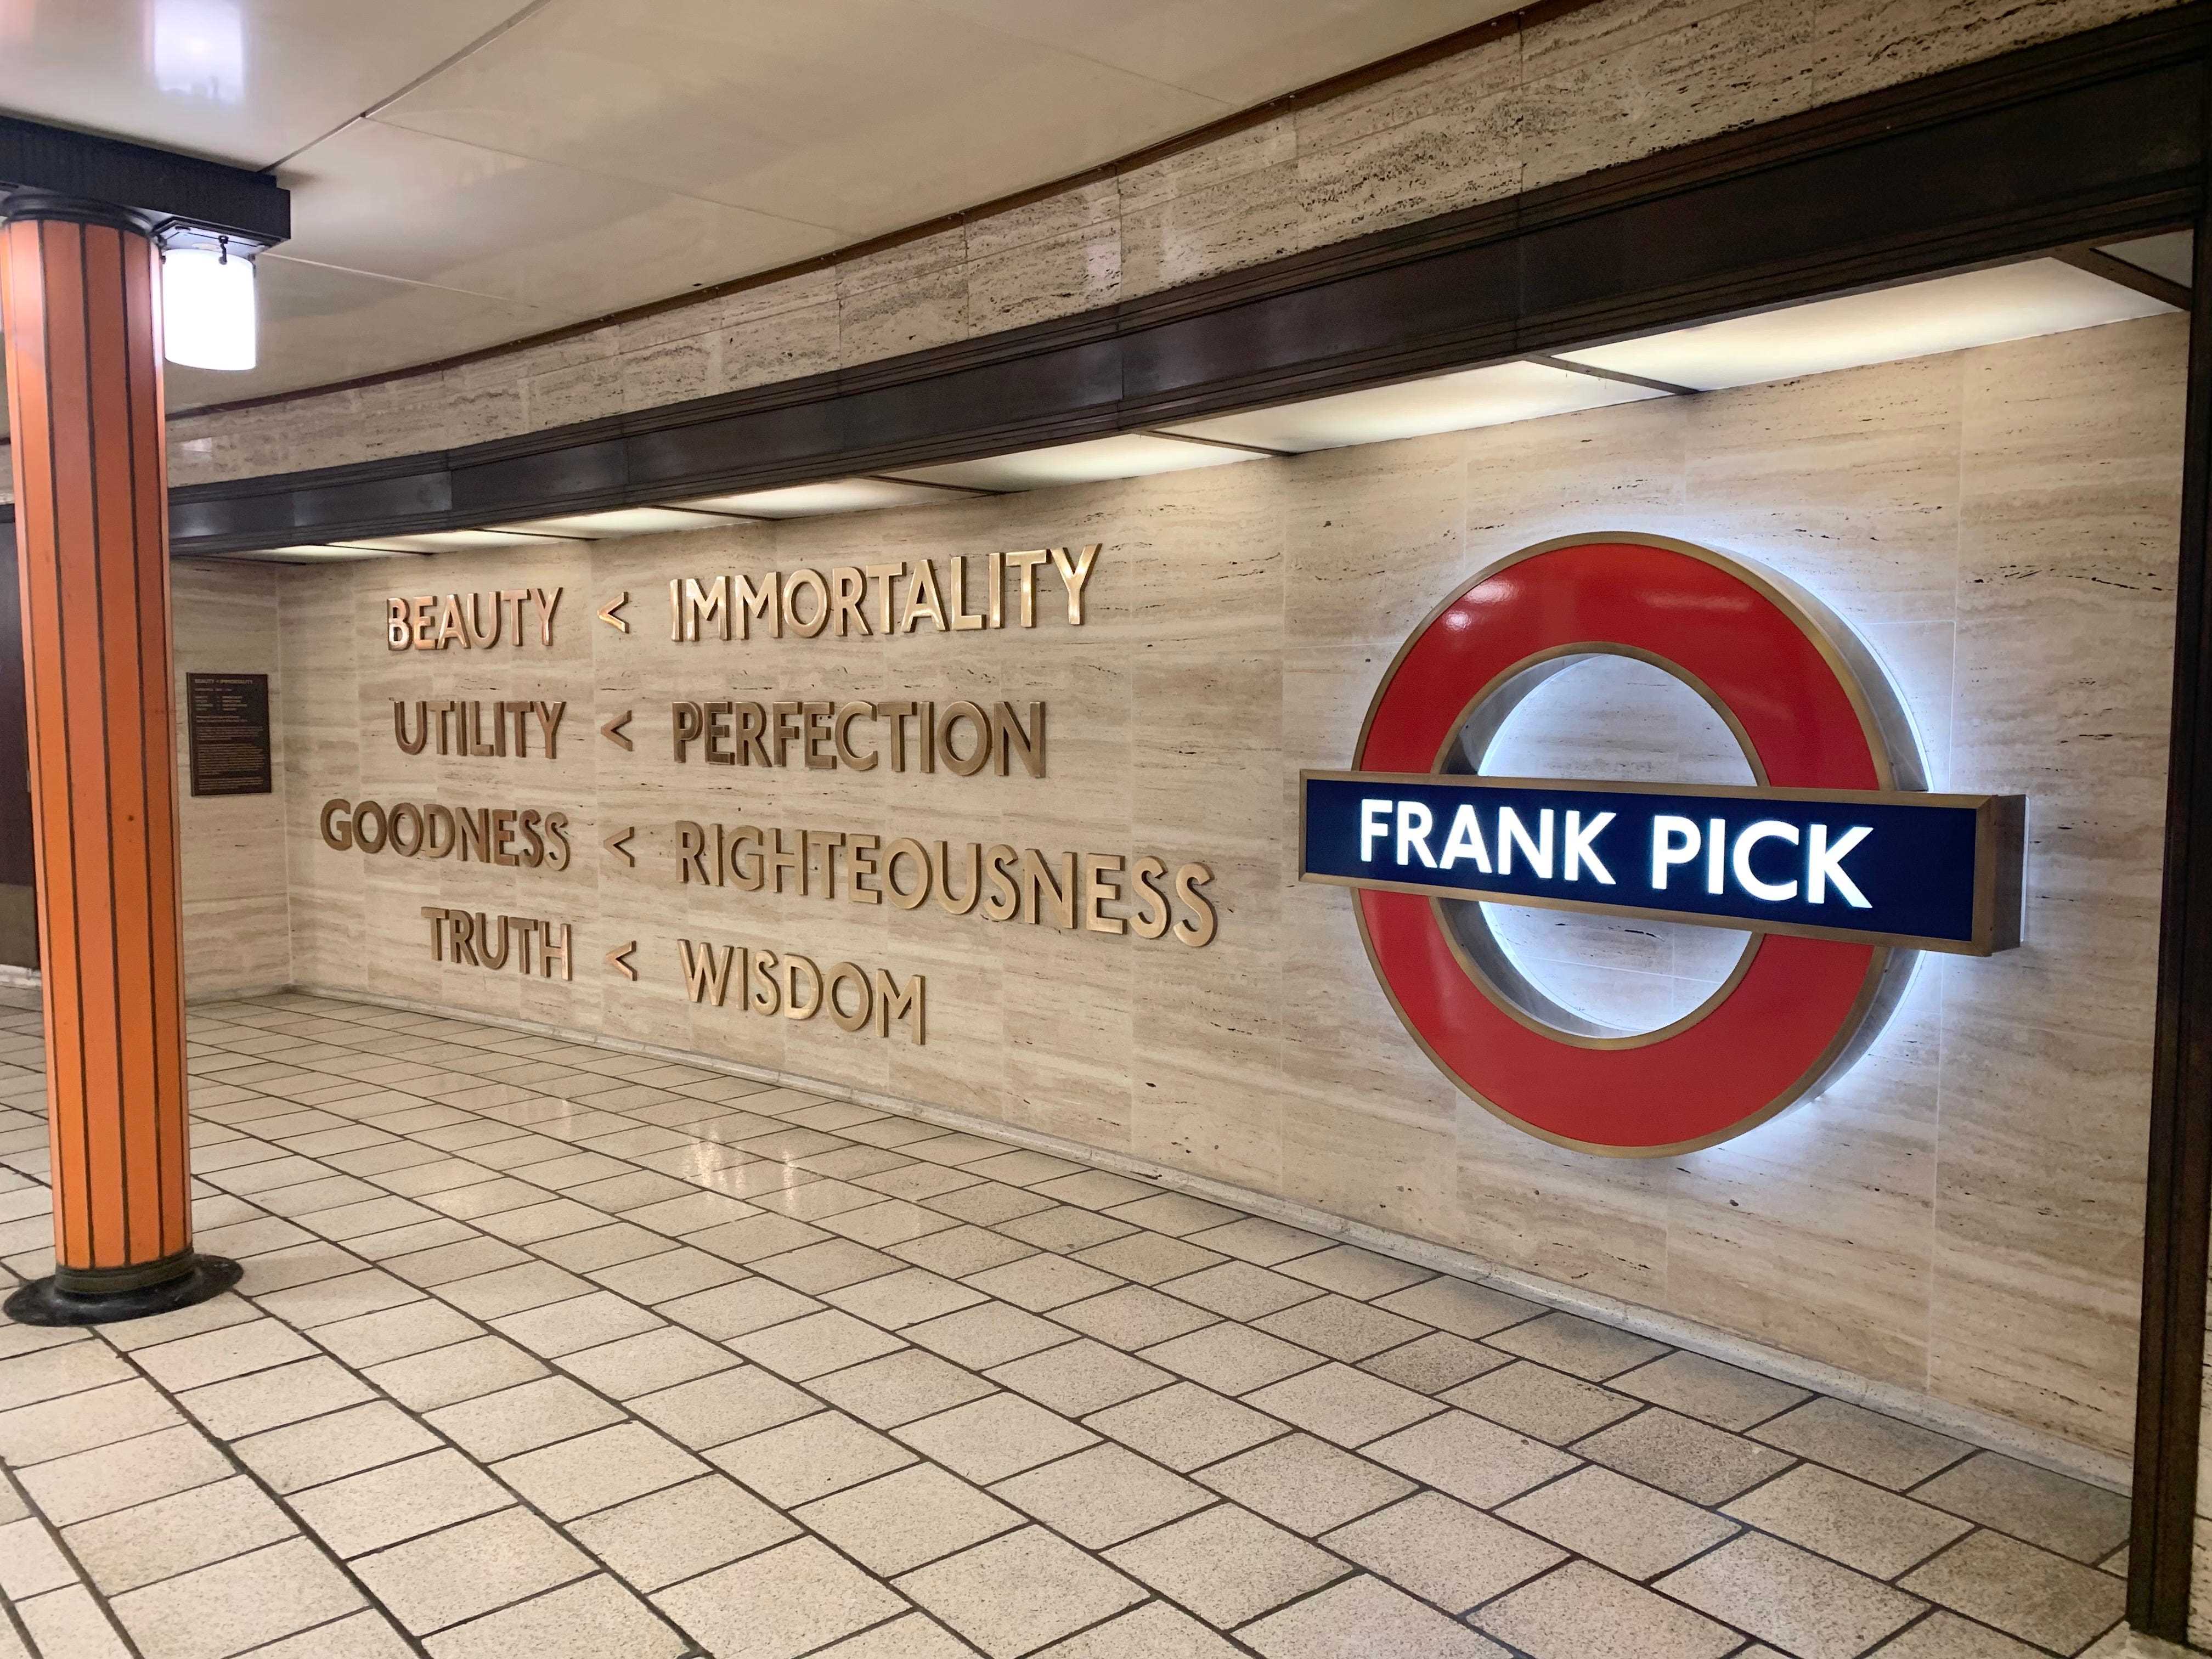 Eine Hommage an Frank Pick an der Wand der Kassenhalle am Bahnhof Piccadilly Circus, London.